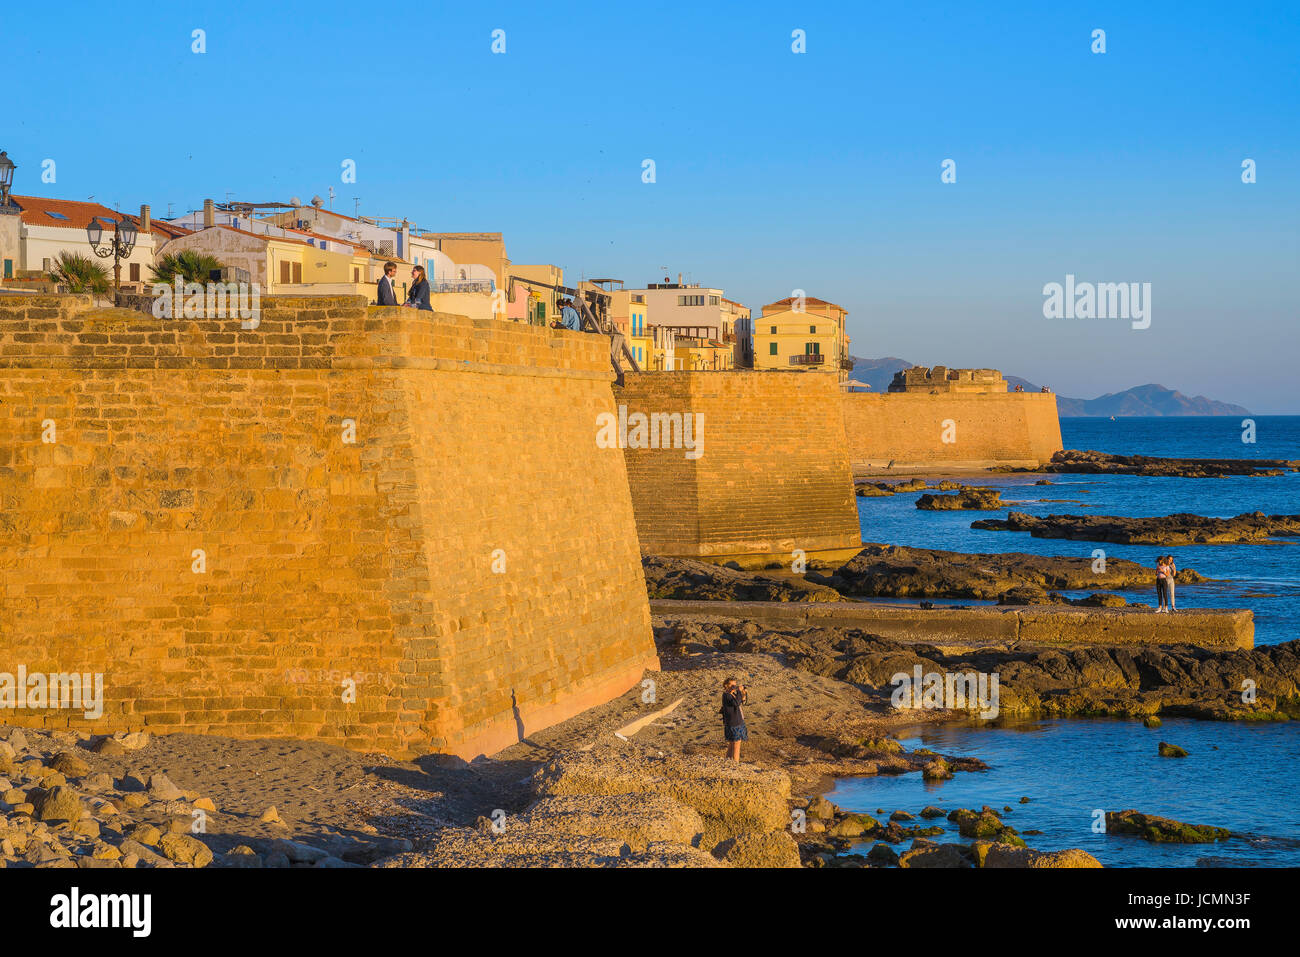 Alghero Sardinien Wand, Blick auf die immense Ufermauer- oder Bastioni - aus dem 14. Jahrhundert auf der westlichen Seite von Alghero im Norden Sardiniens. Stockfoto